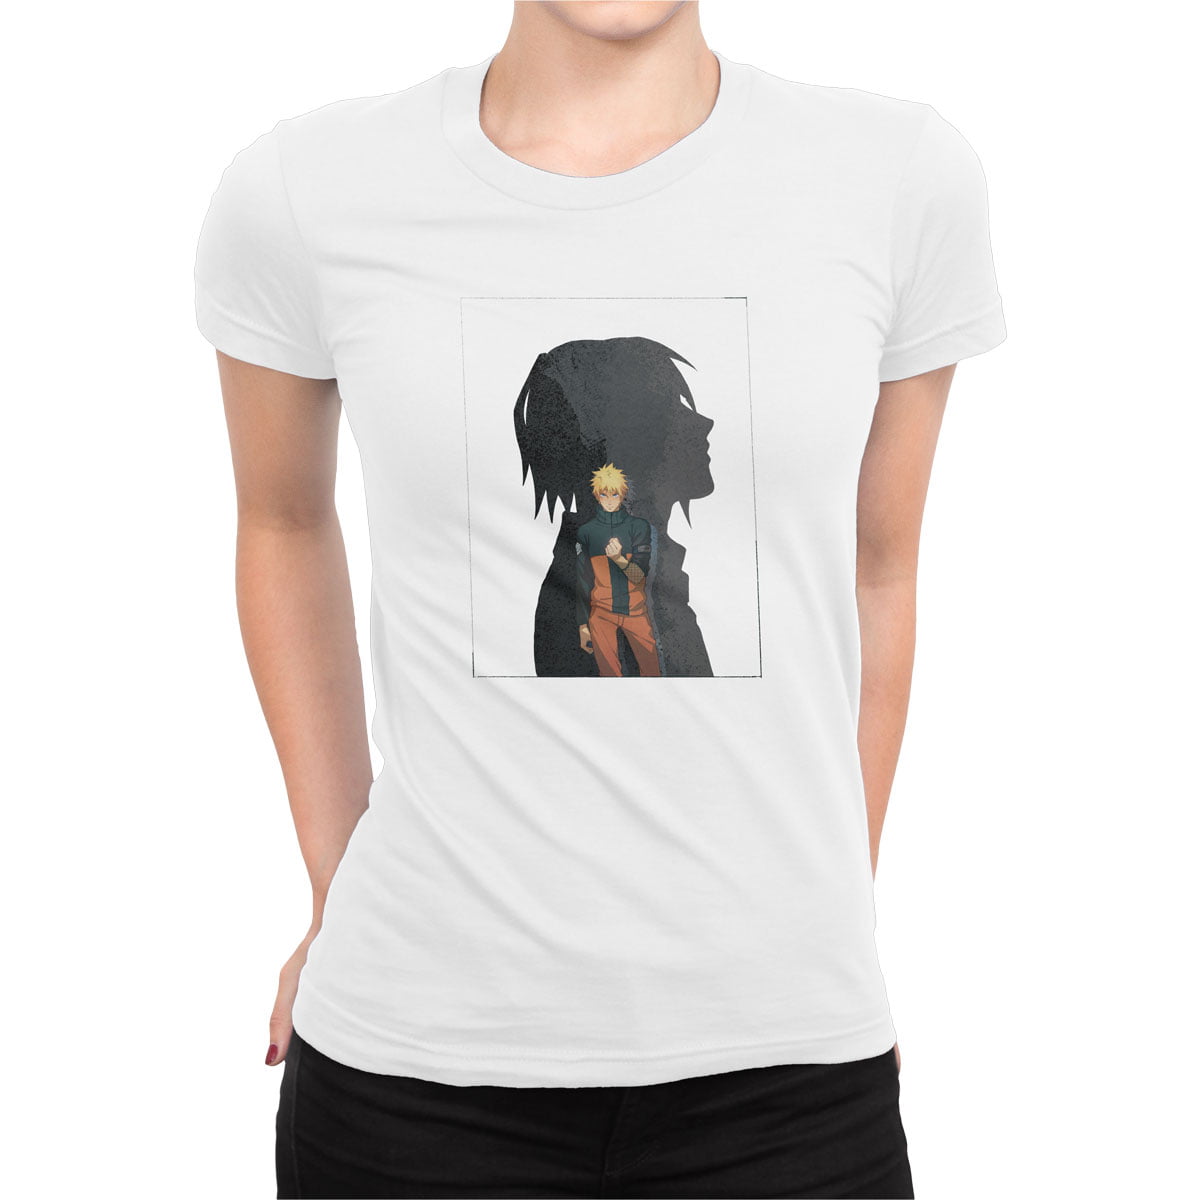 Naruto uzumaki no4 tisort b 1 - naruto uzumaki no4 kadın t-shirt - figurex